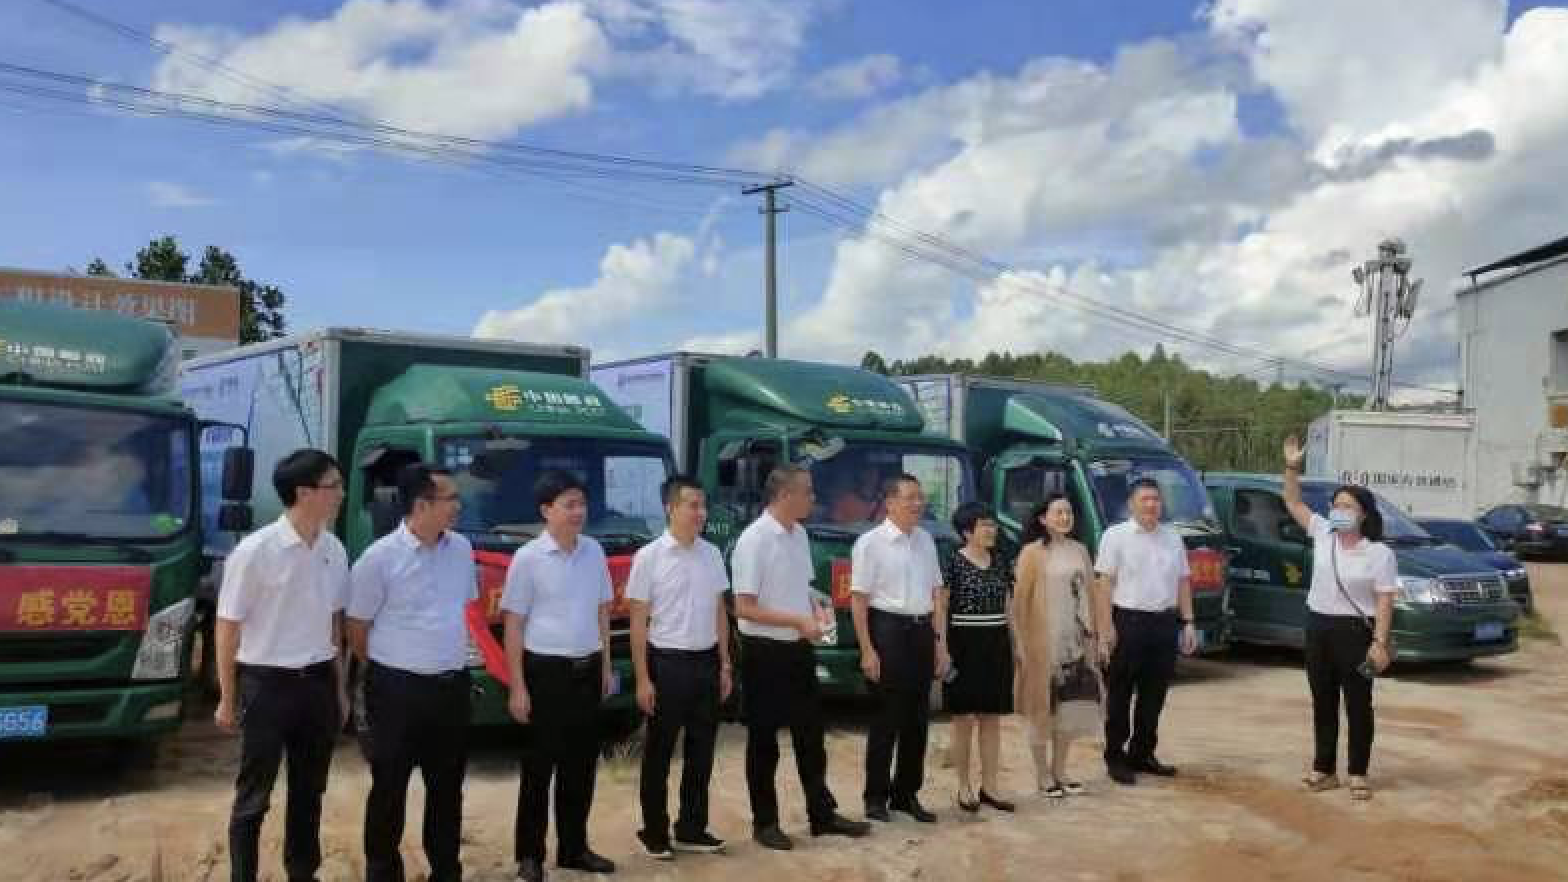 中国邮政乡村振兴化州特色农品番石榴项目举行发车仪式